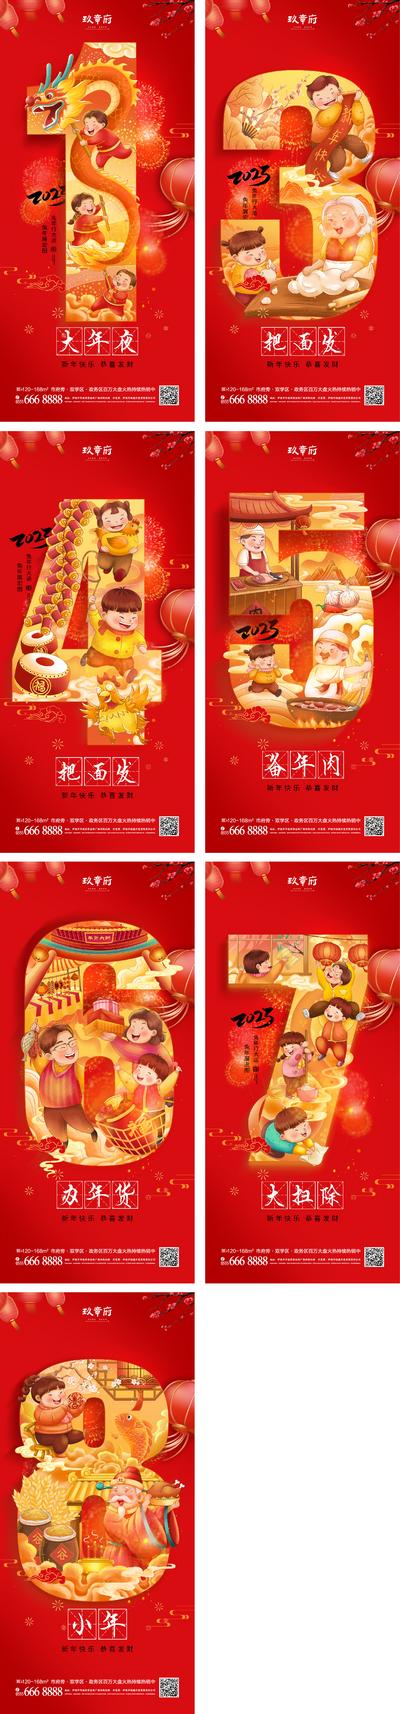 南门网 海报 中国传统节日 春节 新年 除夕 年俗 小年 初一 倒计时 一家人 团圆 国潮 系列